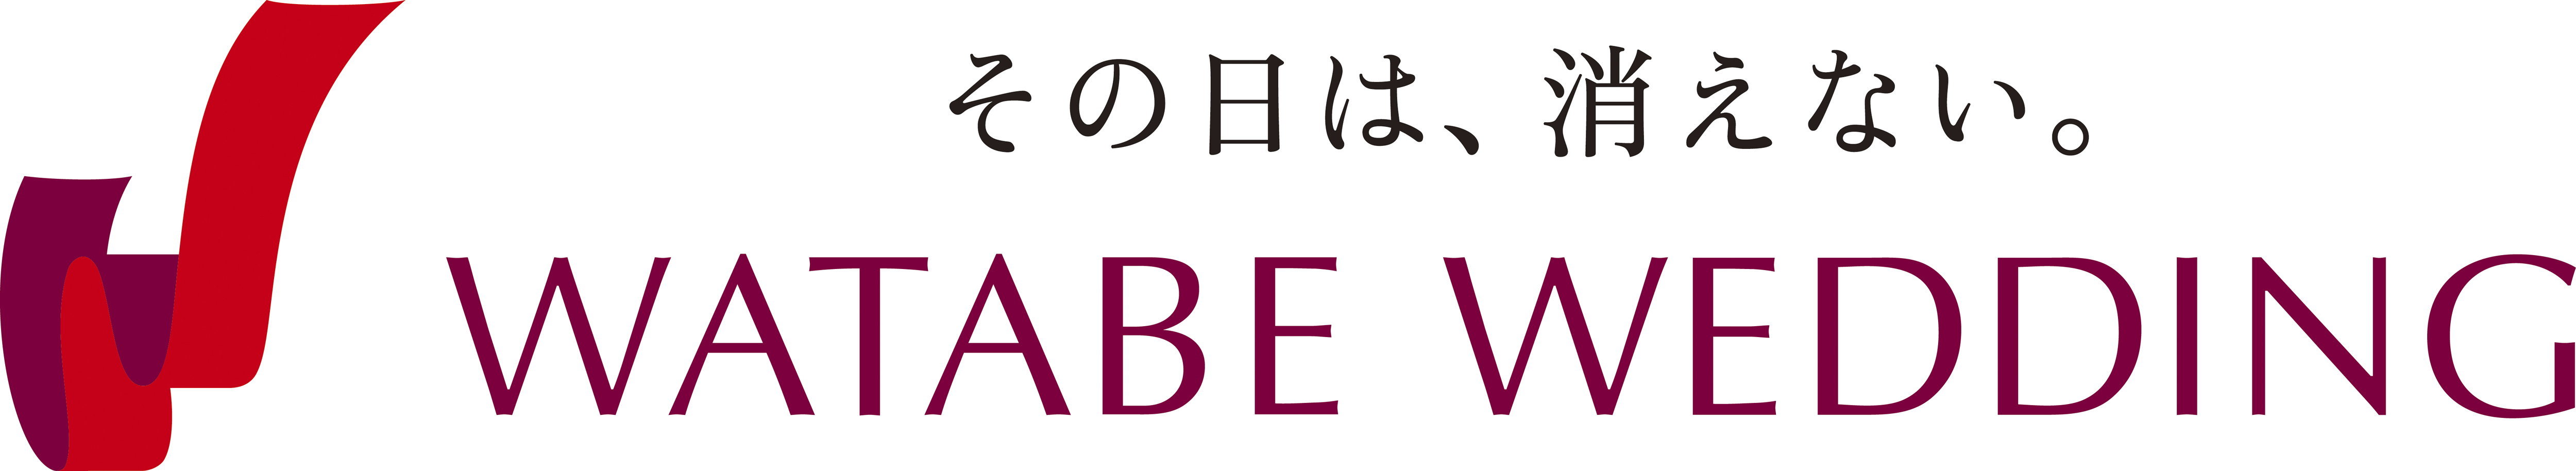 推介: Watabe Wedding HK Ltd.